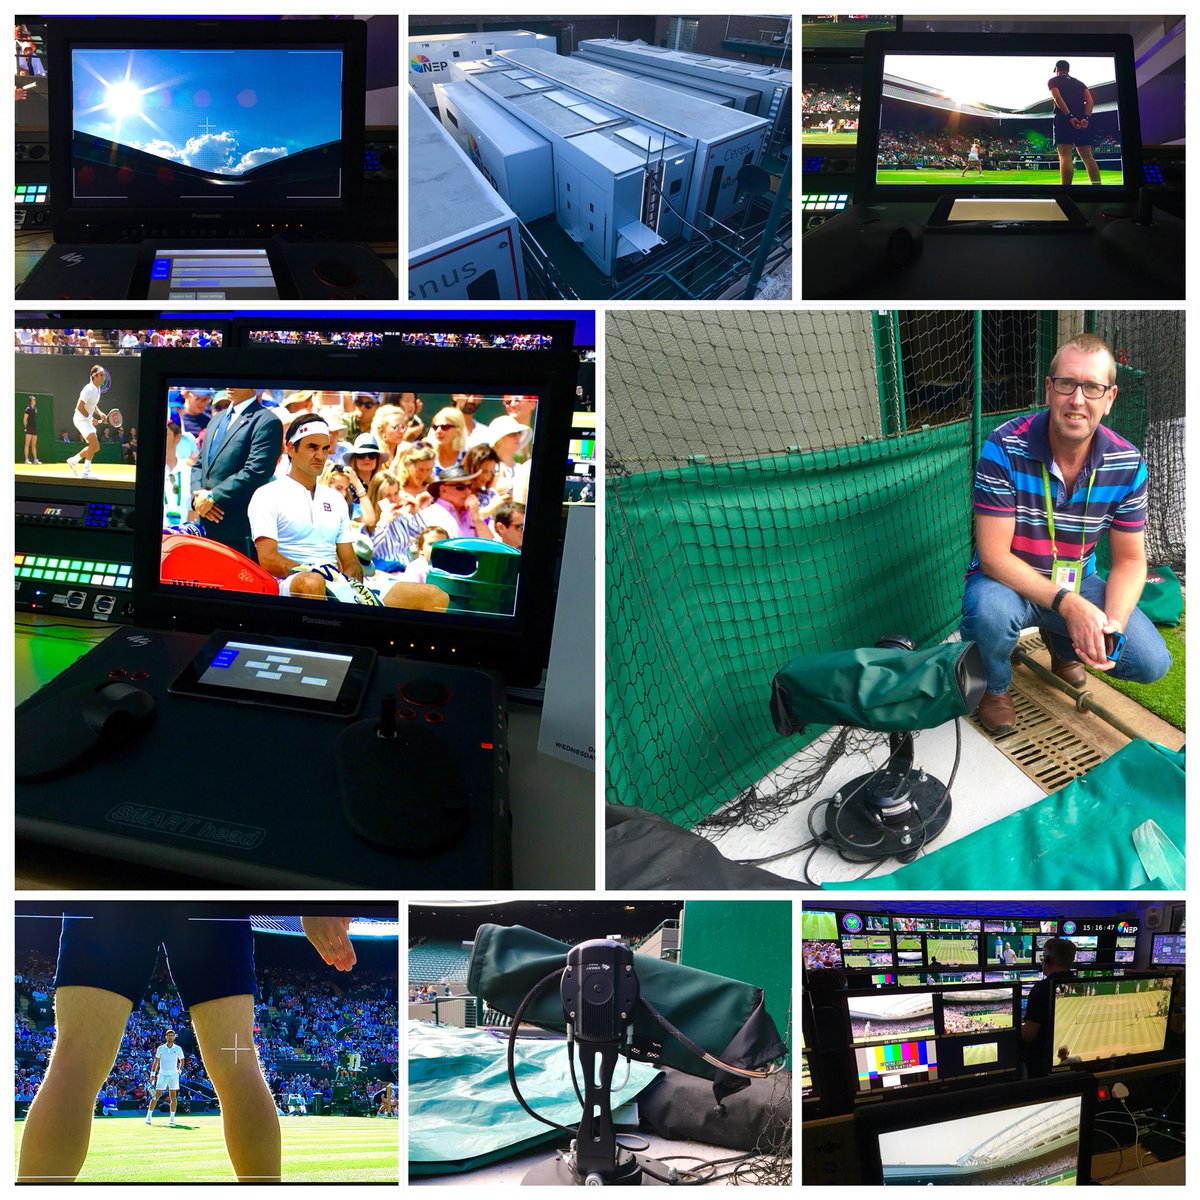 #Wimbledon2018 @NEP_UK @ACSMediaUK @ArenaUHD @BBCSport #WimbledonBroadcastServices #Court1 #Camera10 #SMARThead #RemoteCameraOperator #Tennis